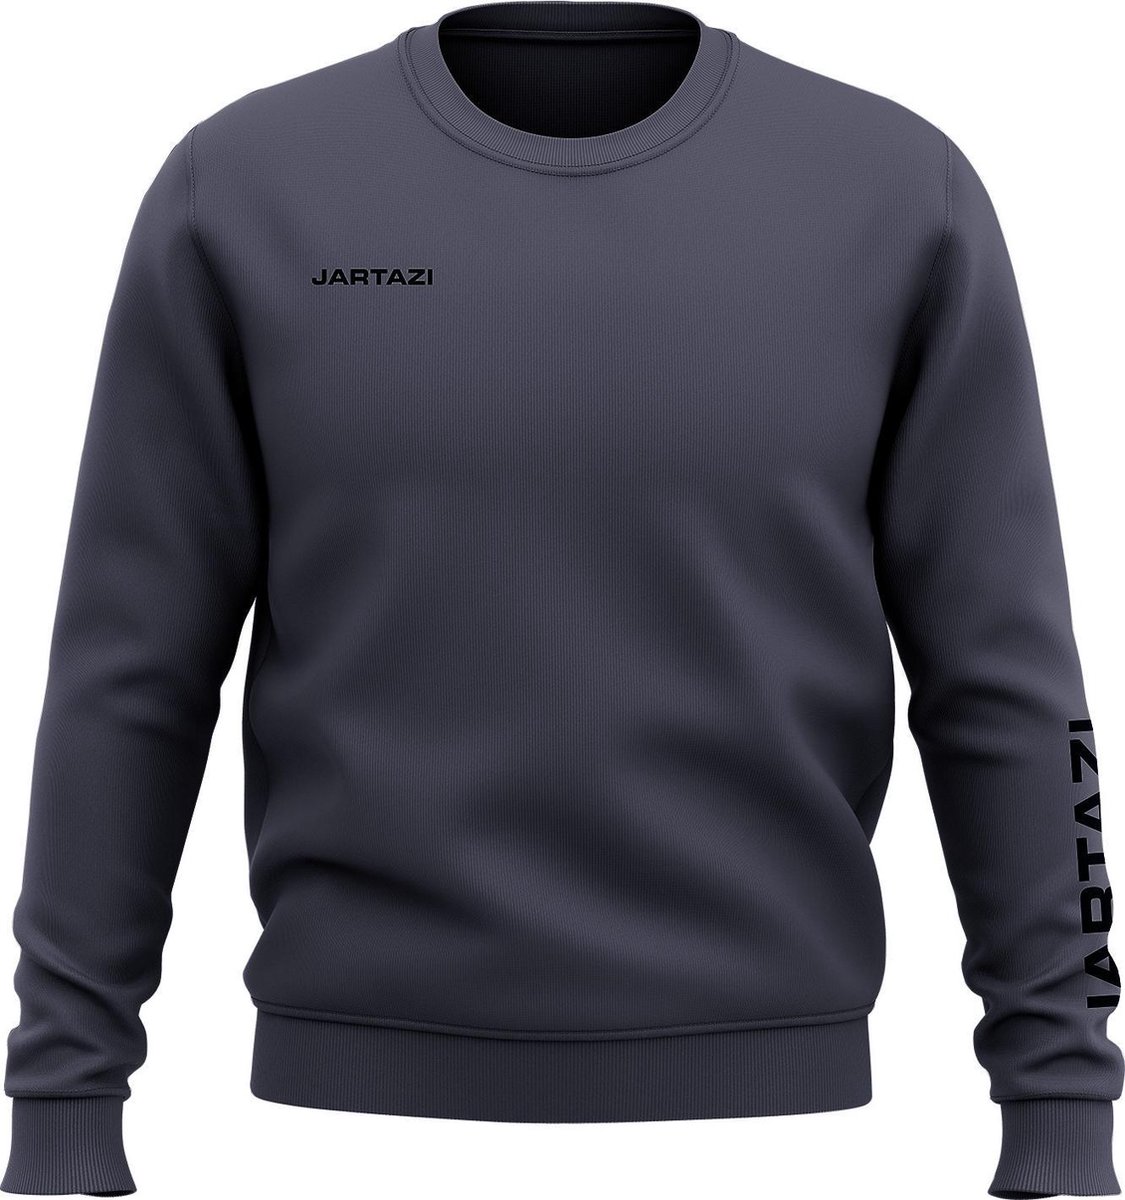 Jartazi Sweater Premium Crewneck Katoen/polyester Blauwgrijs Mt Xs